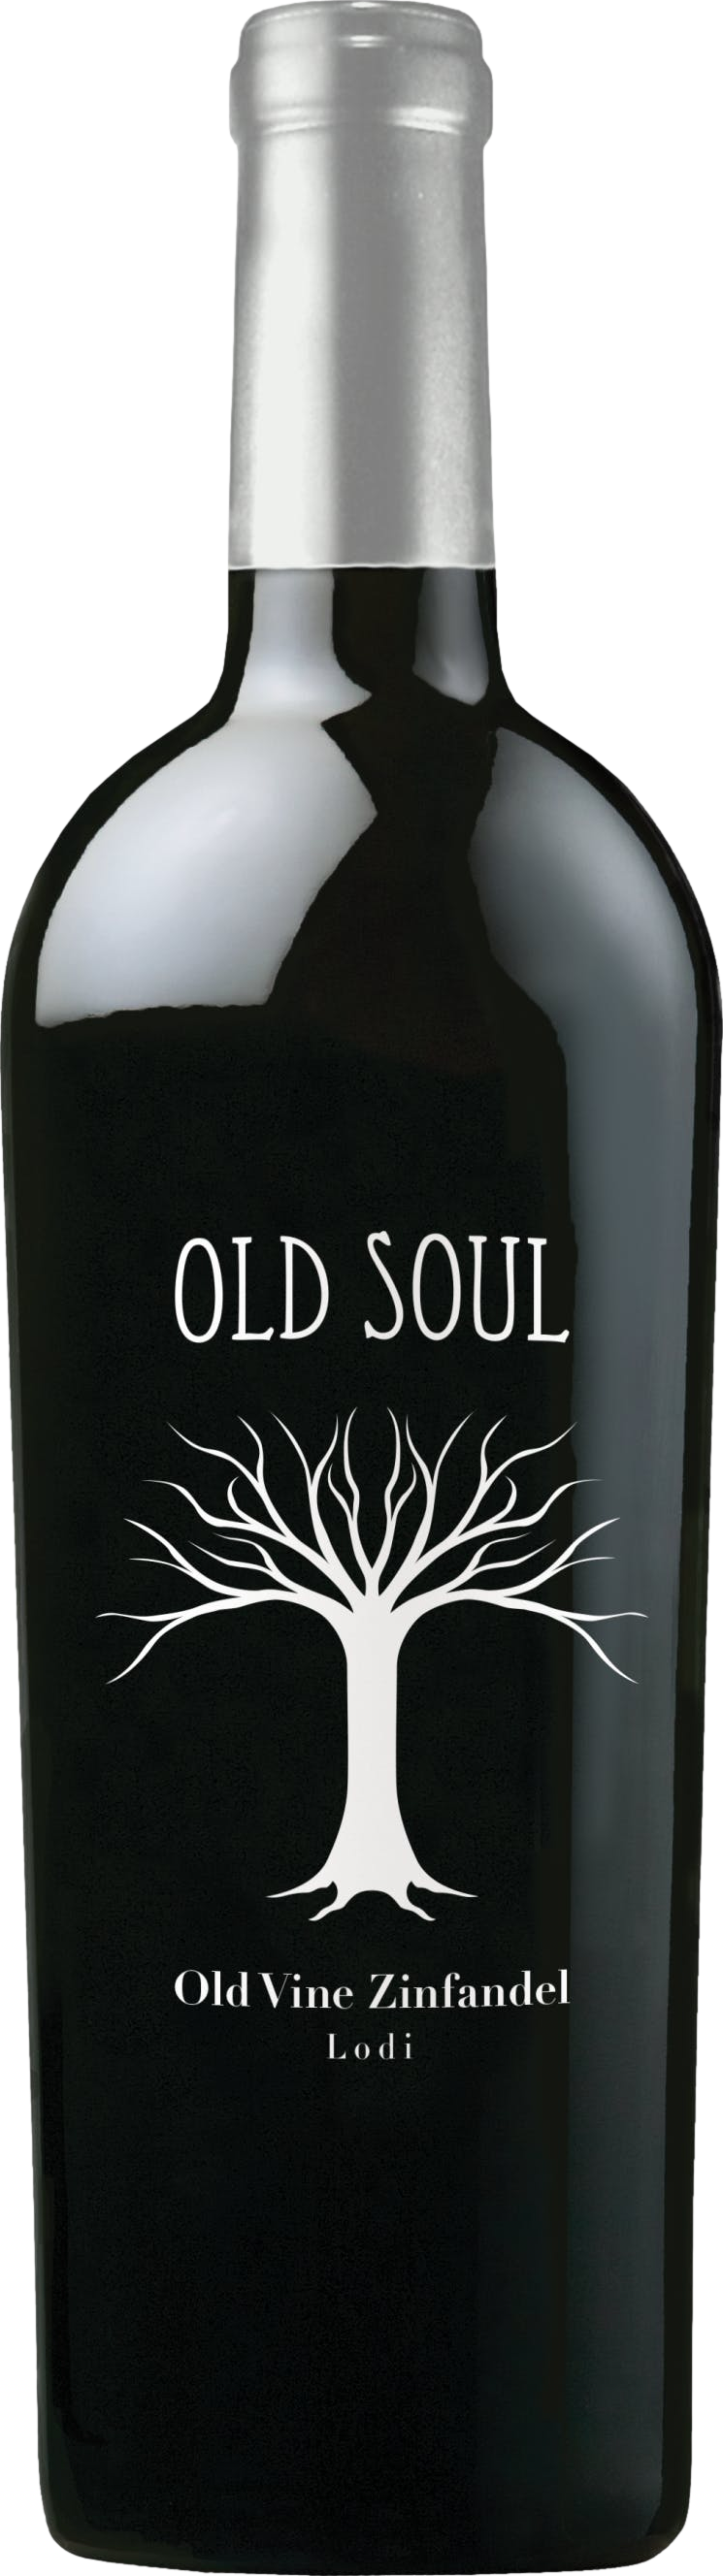 Old Soul Old Vine Zinfandel 2021 Old Soul 8wines DACH